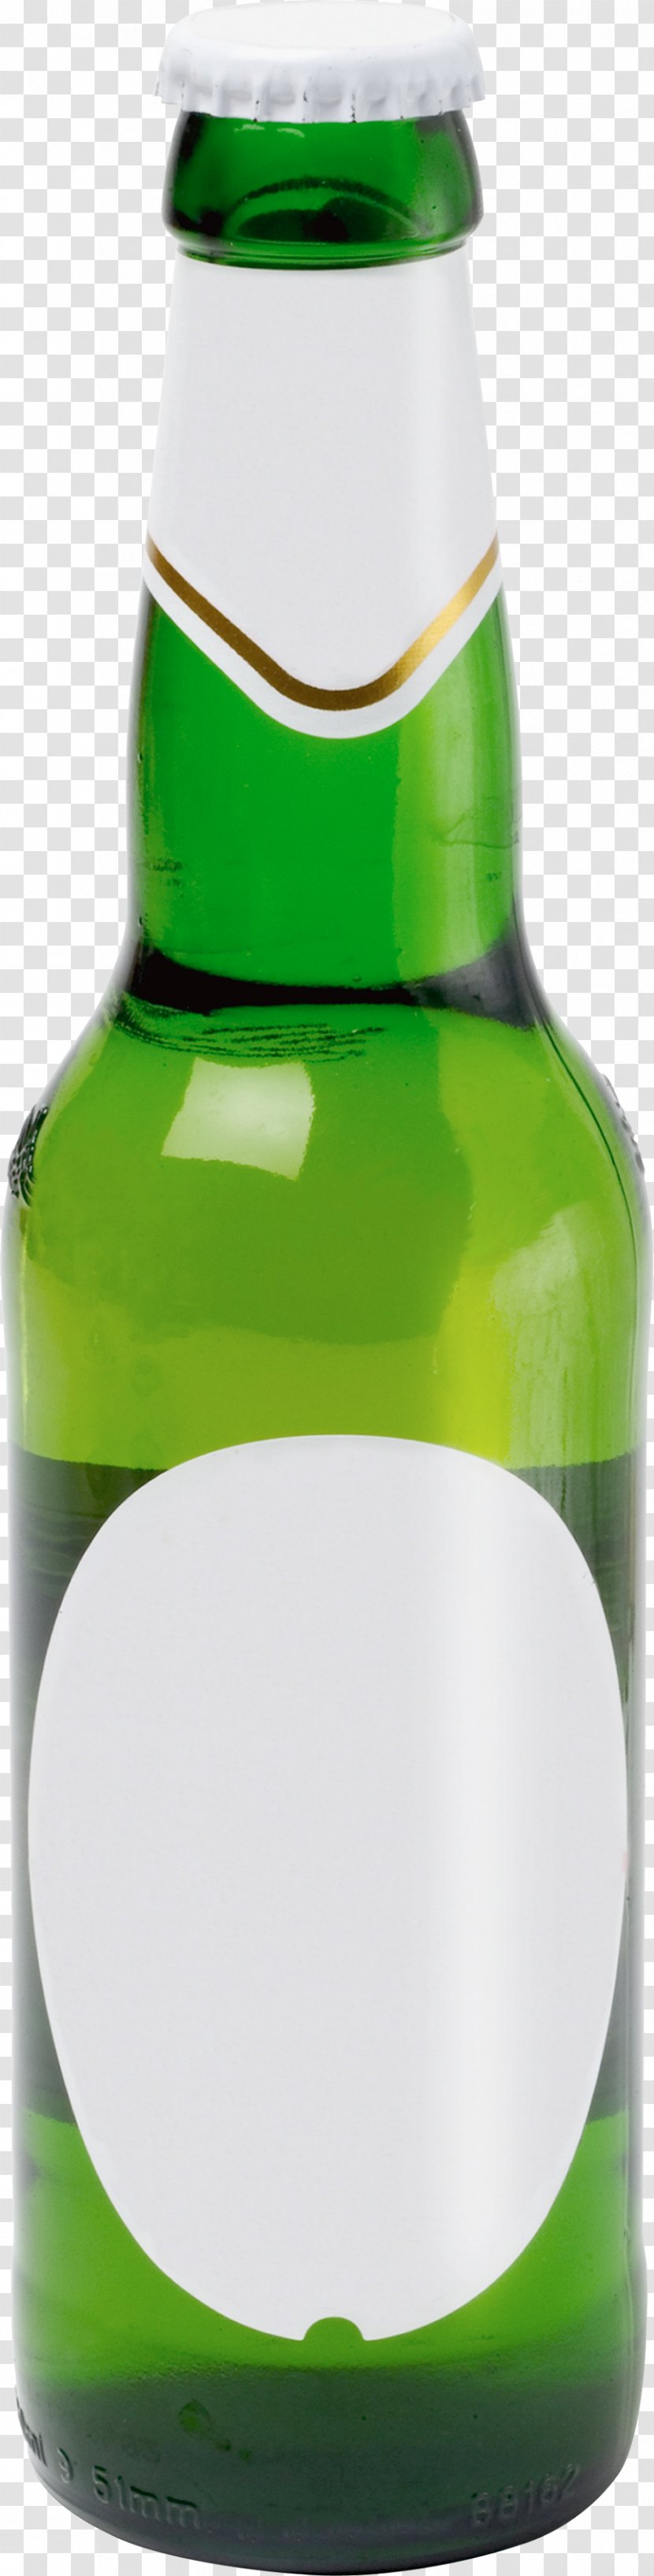 Bottle Beer Butylka - Hip Flask Transparent PNG